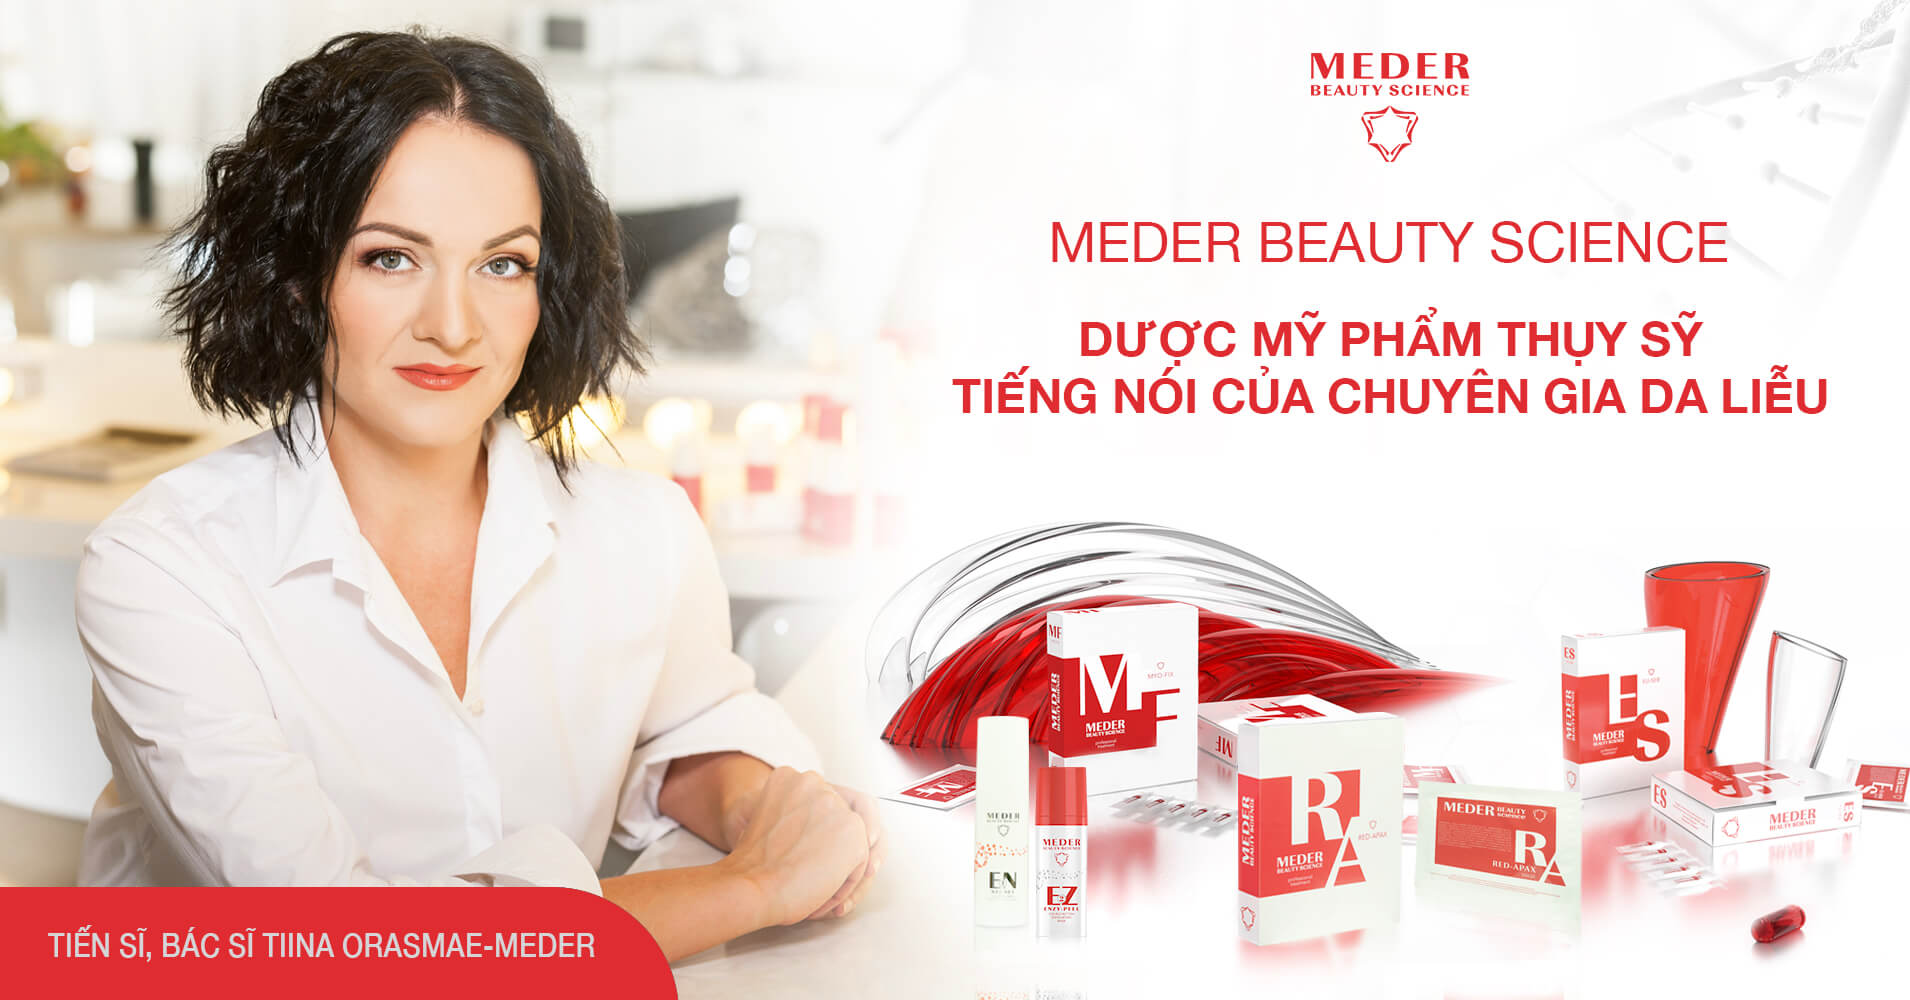 Meder Beauty Science - Dược mỹ phẩm được chuyên gia da liễu khuyên dùng